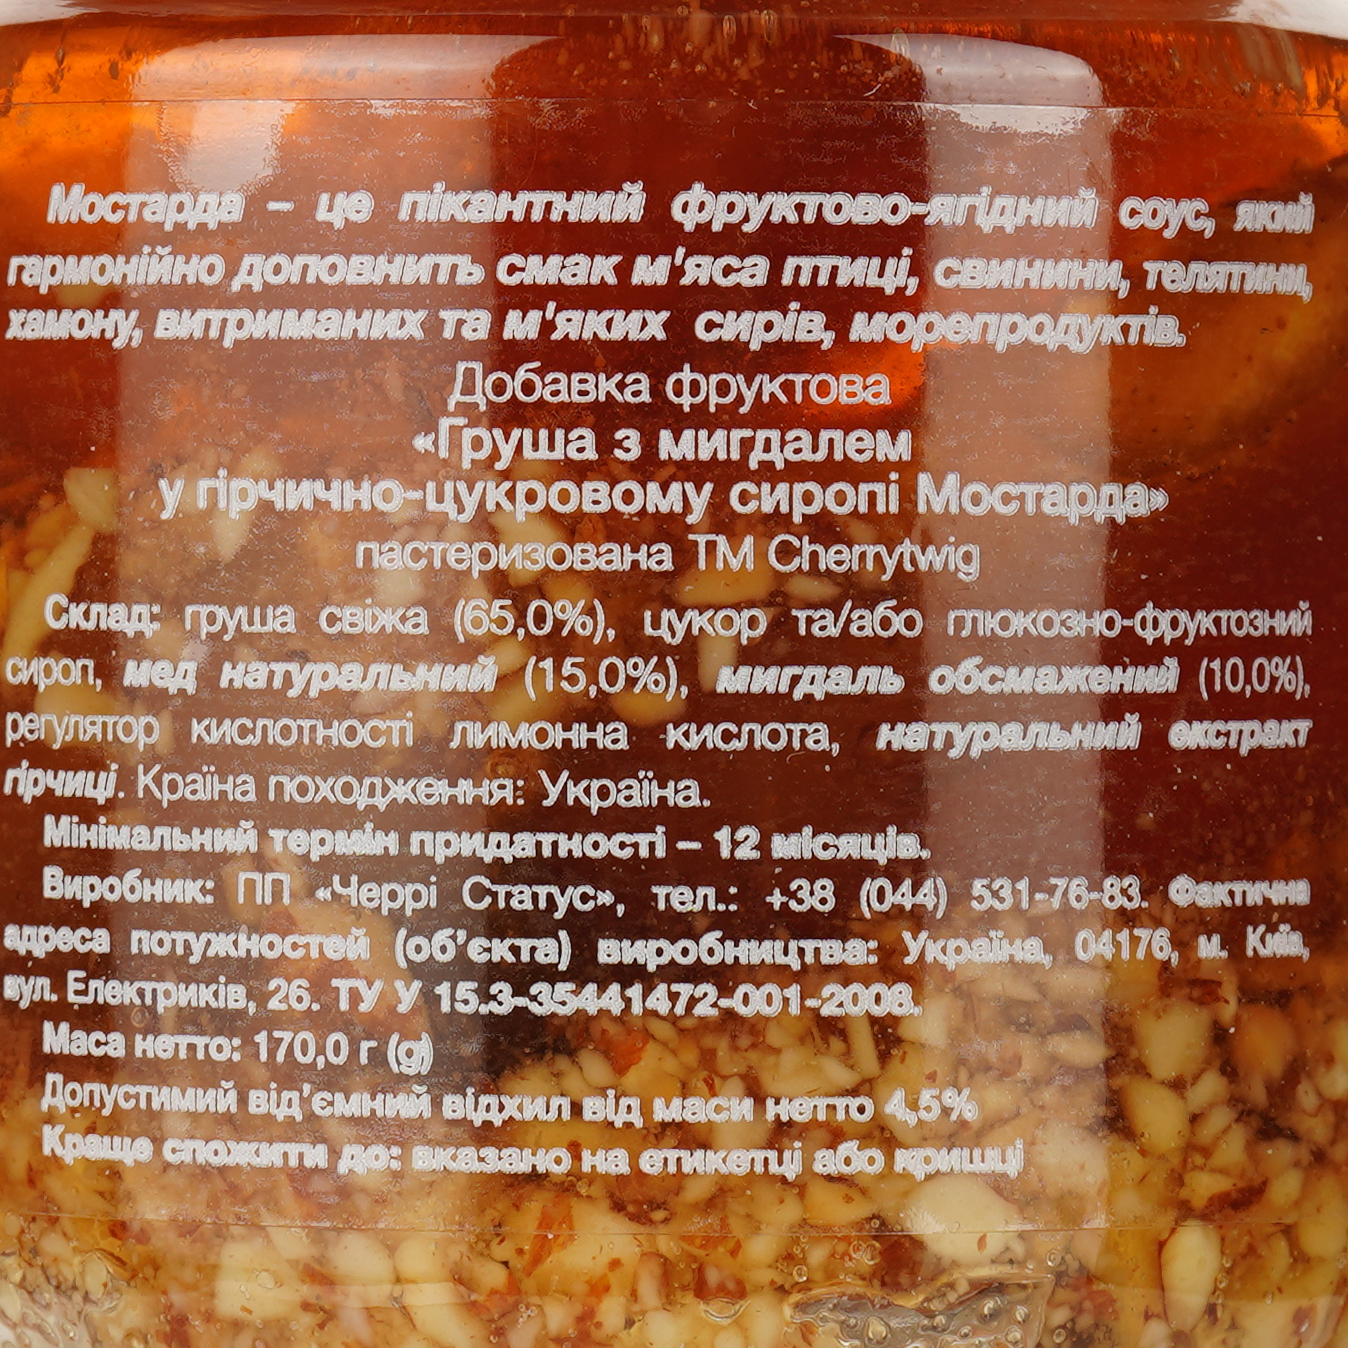 Мостарда Cherry Twig Груша с миндалем в горчично-сахарном сиропе, 170 г (923513) - фото 3